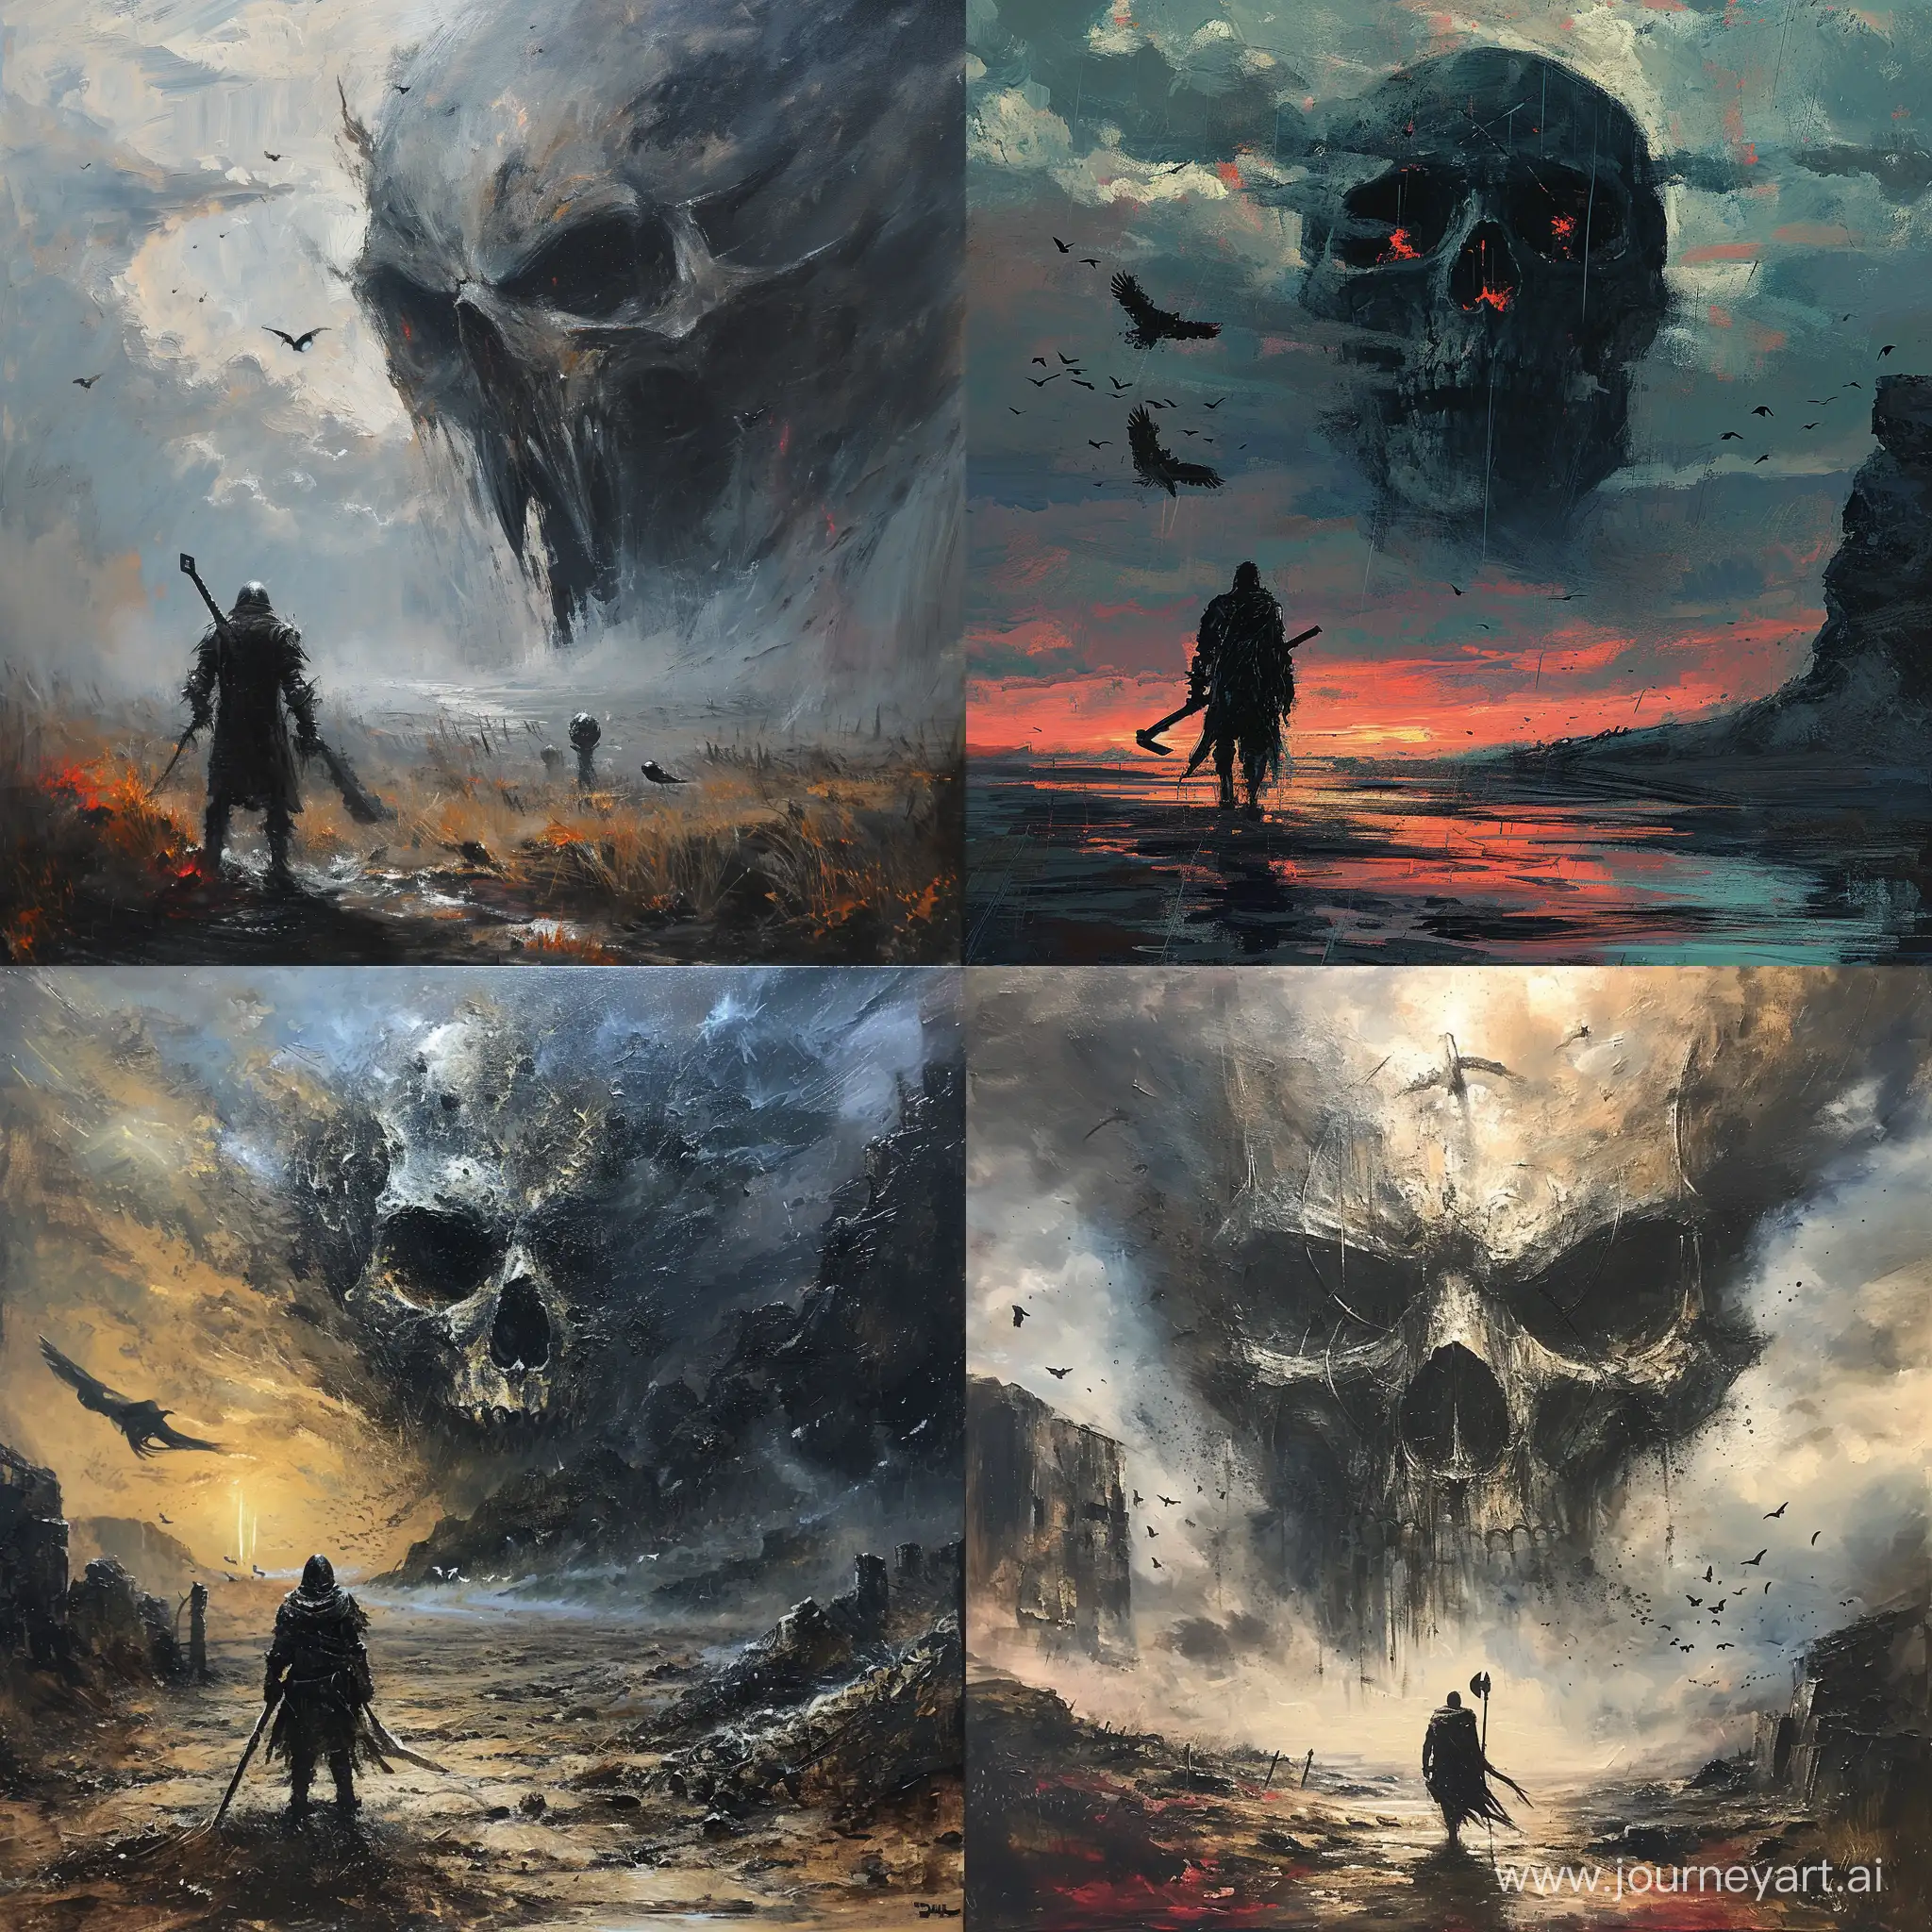 Warrior-Confronting-Giant-Skull-in-Desolate-Dusk-Landscape